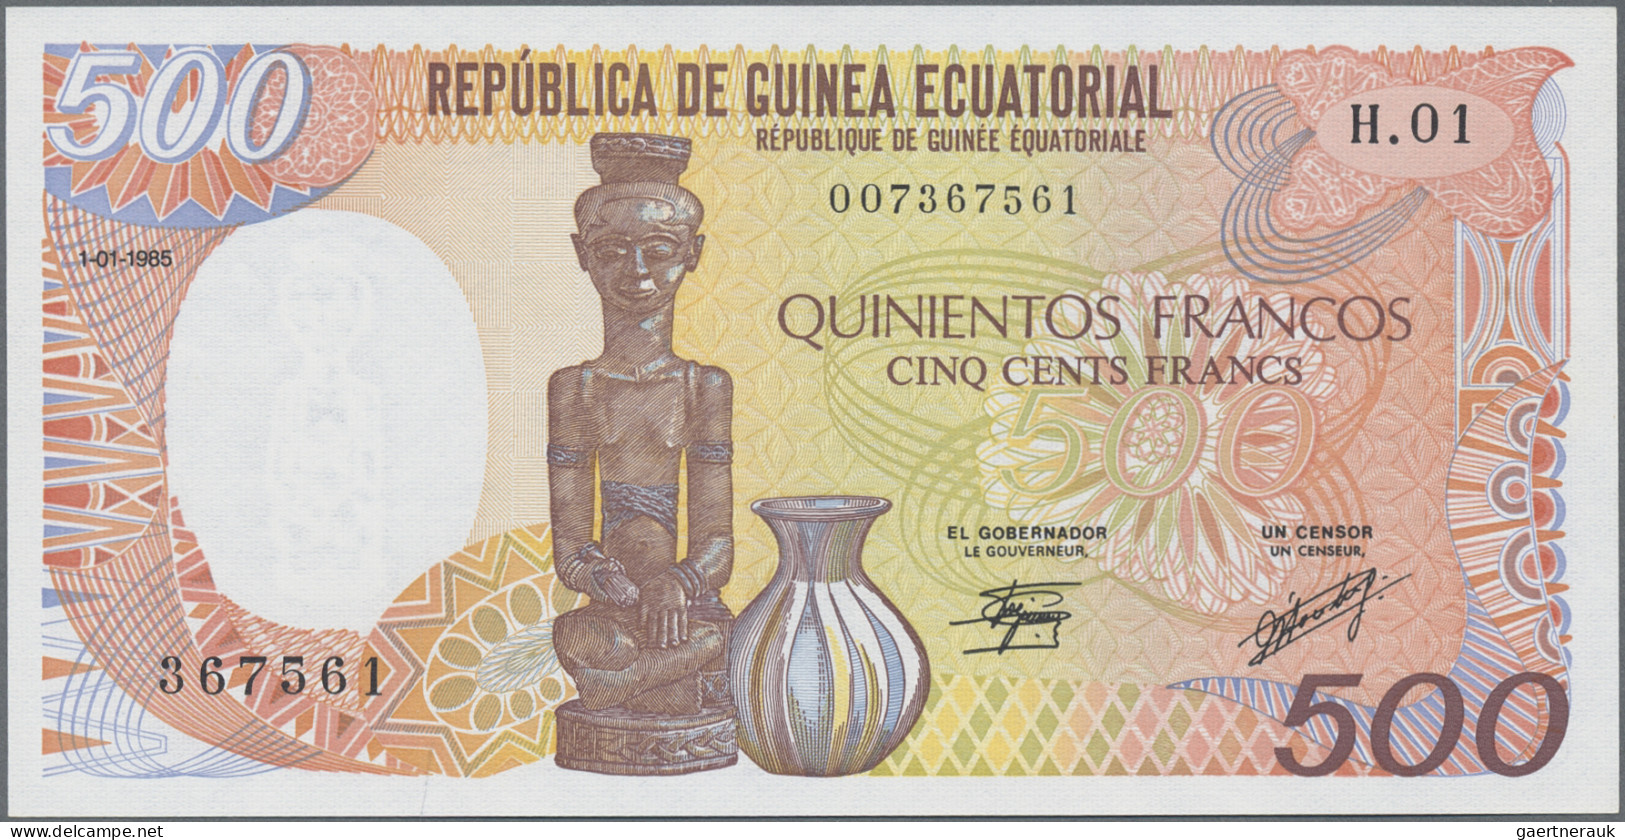 Equatorial Guinea: Banque Des États De L'Afrique Centrale - República De Guinea - Guinée Equatoriale